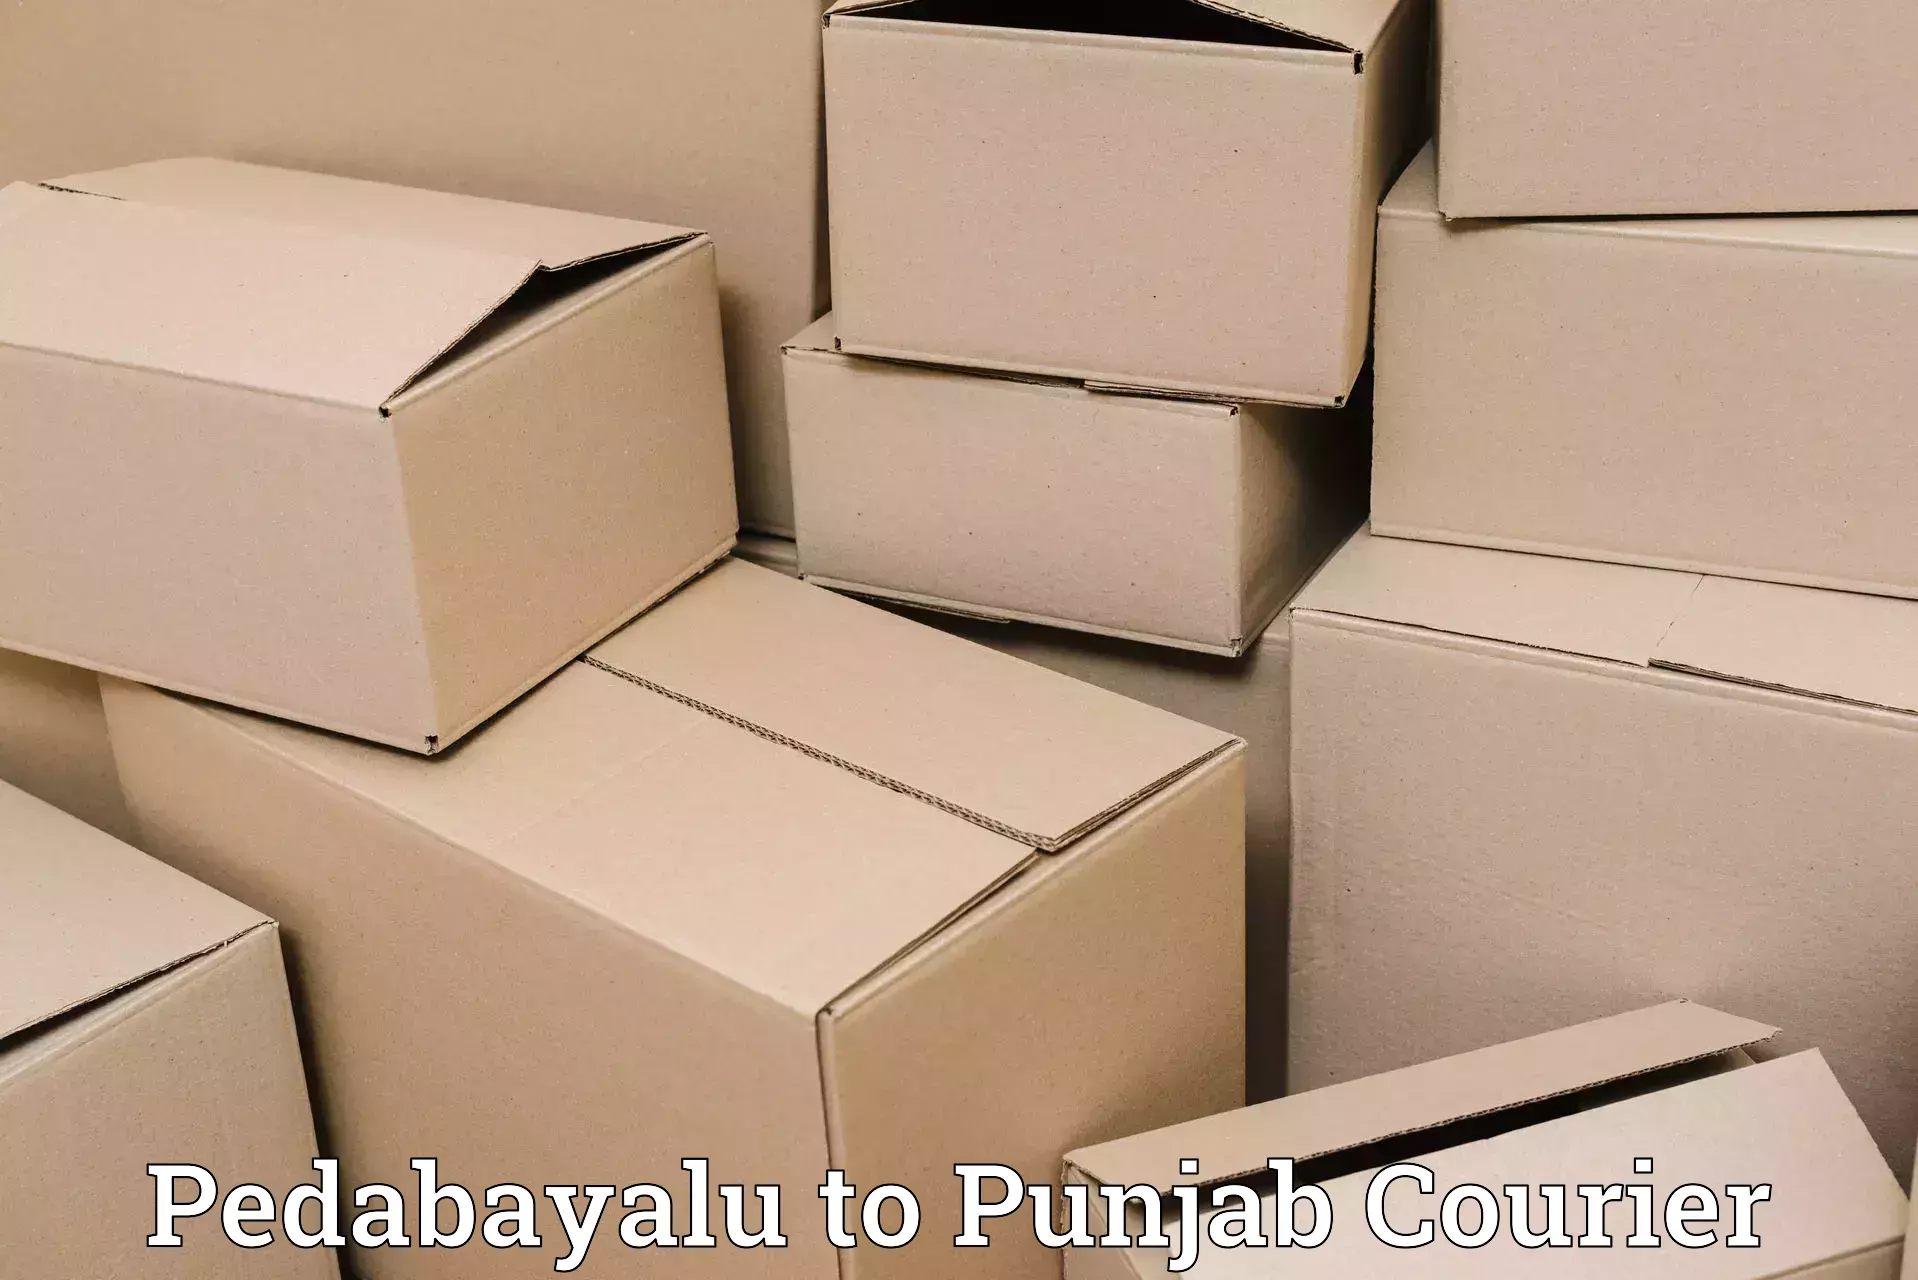 Bulk shipment Pedabayalu to Central University of Punjab Bathinda